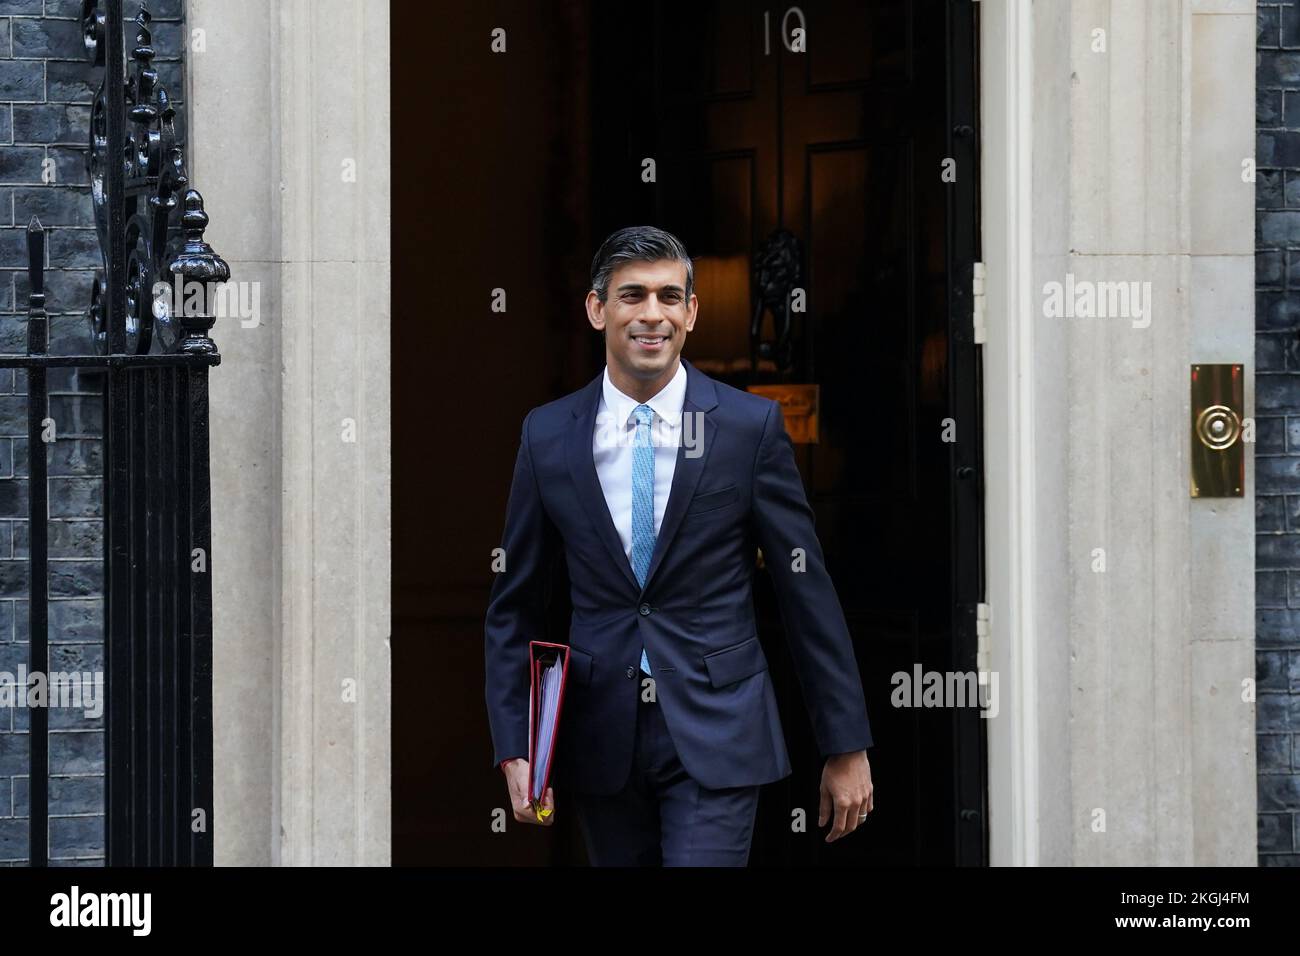 Le Premier ministre Rishi Sunak quitte le 10 Downing Street, Londres, pour assister aux questions du Premier ministre au Parlement. Date de la photo: Mercredi 23 novembre 2022. Banque D'Images